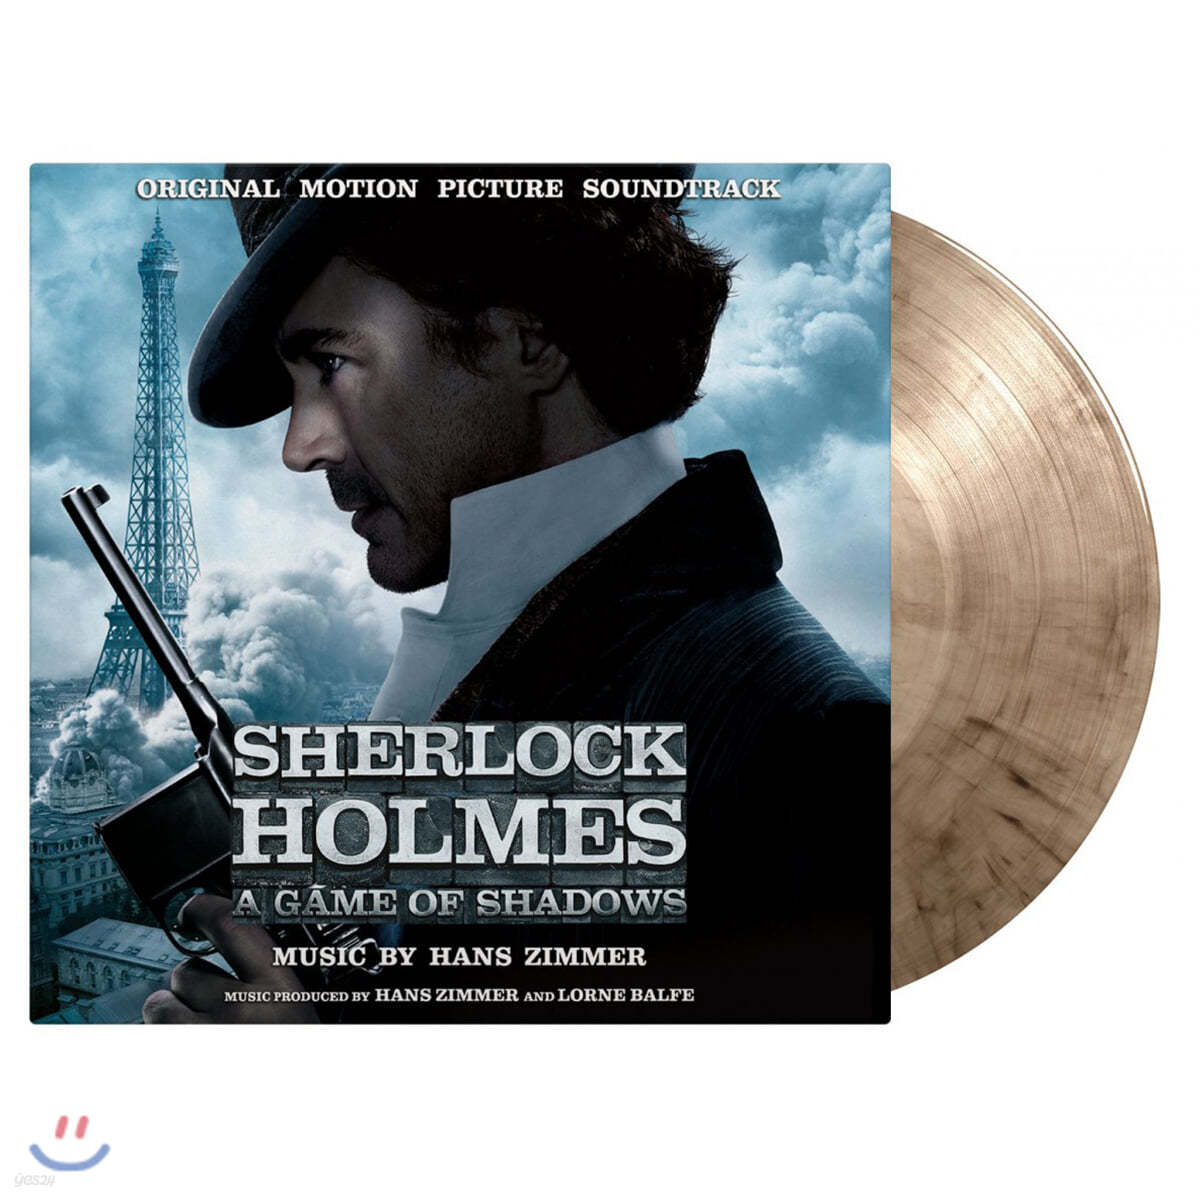 셜록 홈즈: 그림자 게임 영화음악 (Sherlock Holmes: A Game of Shadows OST by Hans Zimmer 한스 짐머) [스모크 컬러 2LP]